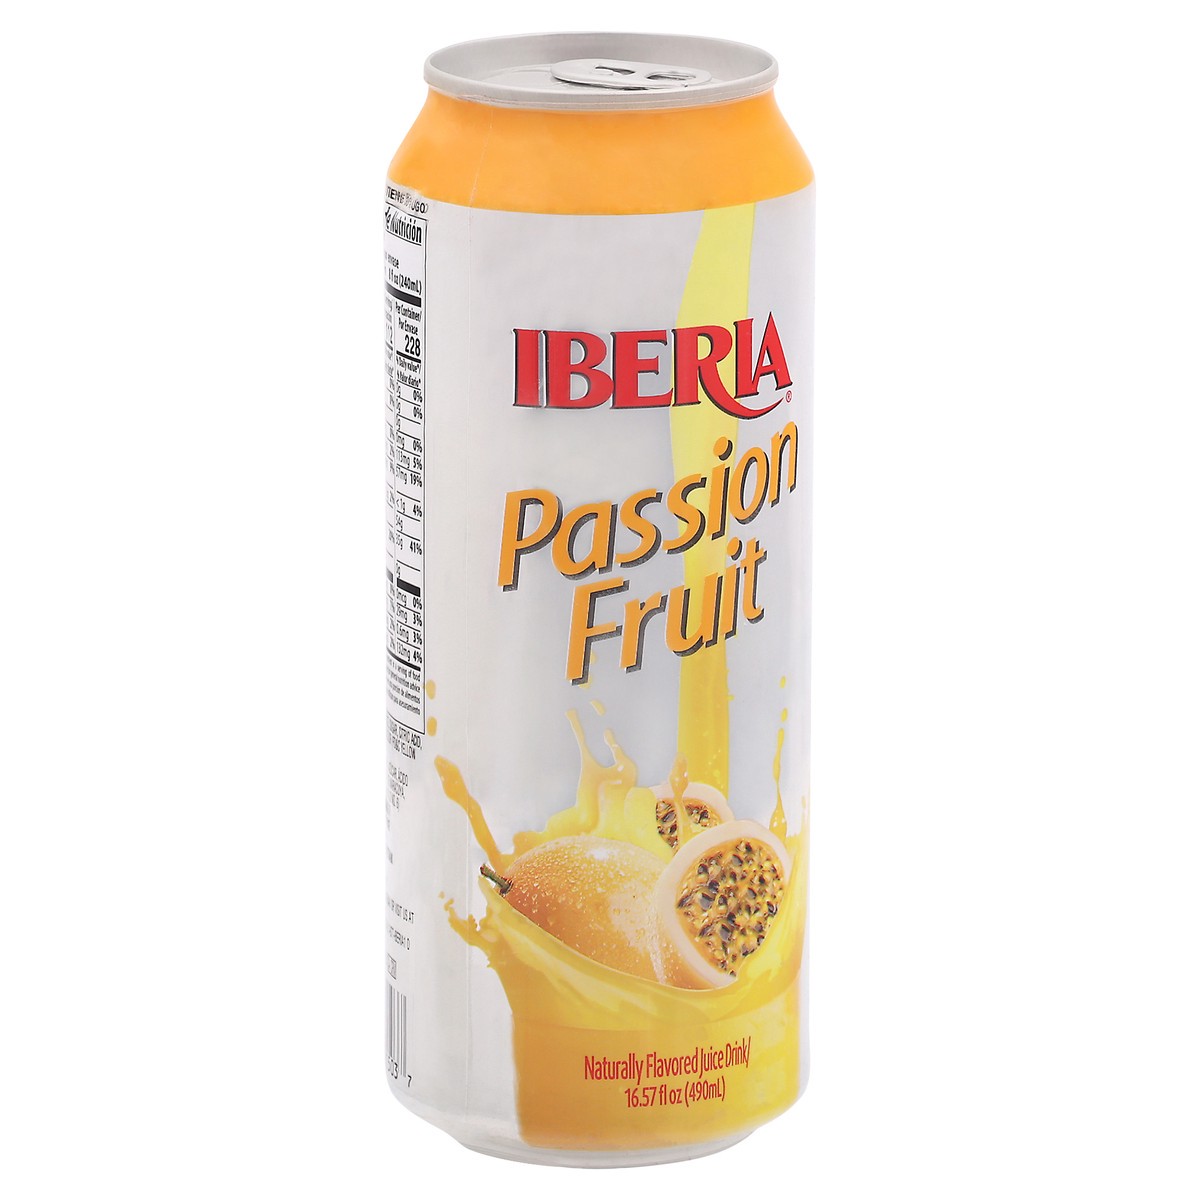 slide 2 of 9, Iberia Passion Fruit Juice Drink - 16.57 fl oz, 16.57 fl oz